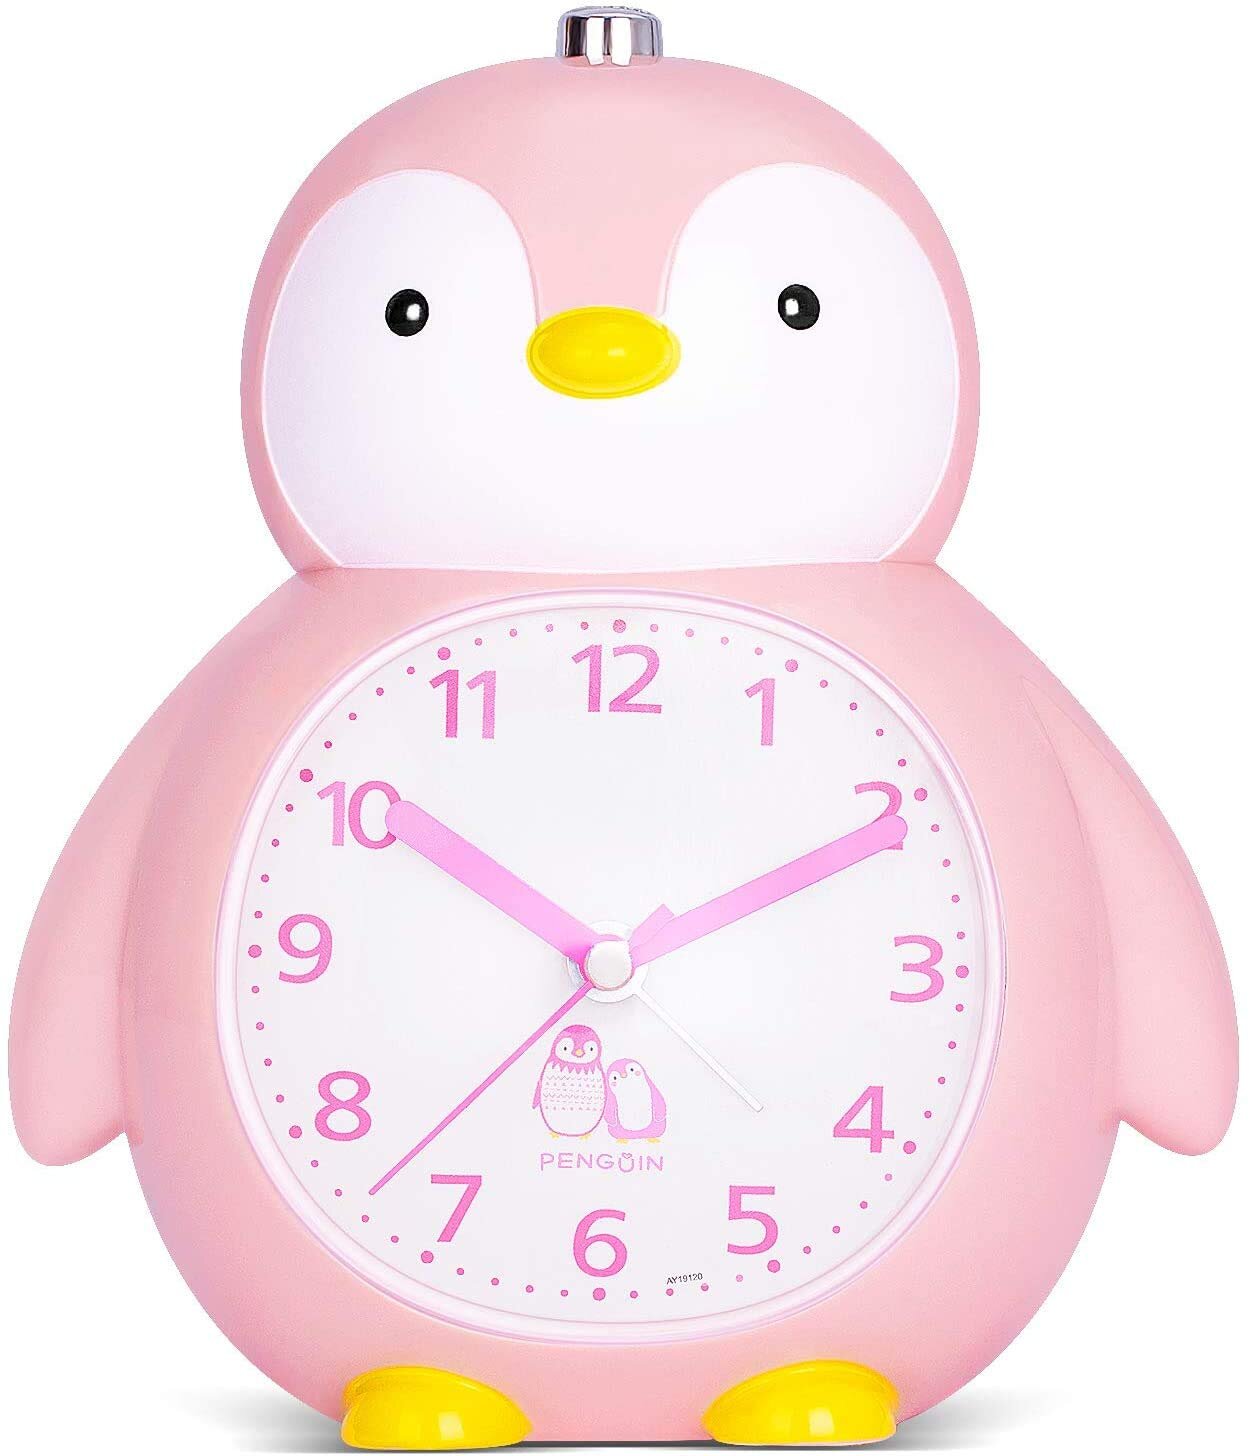 Kids Alarm Clock for Kids Children's Alarm Clocks for Girls Boys Bedroom 